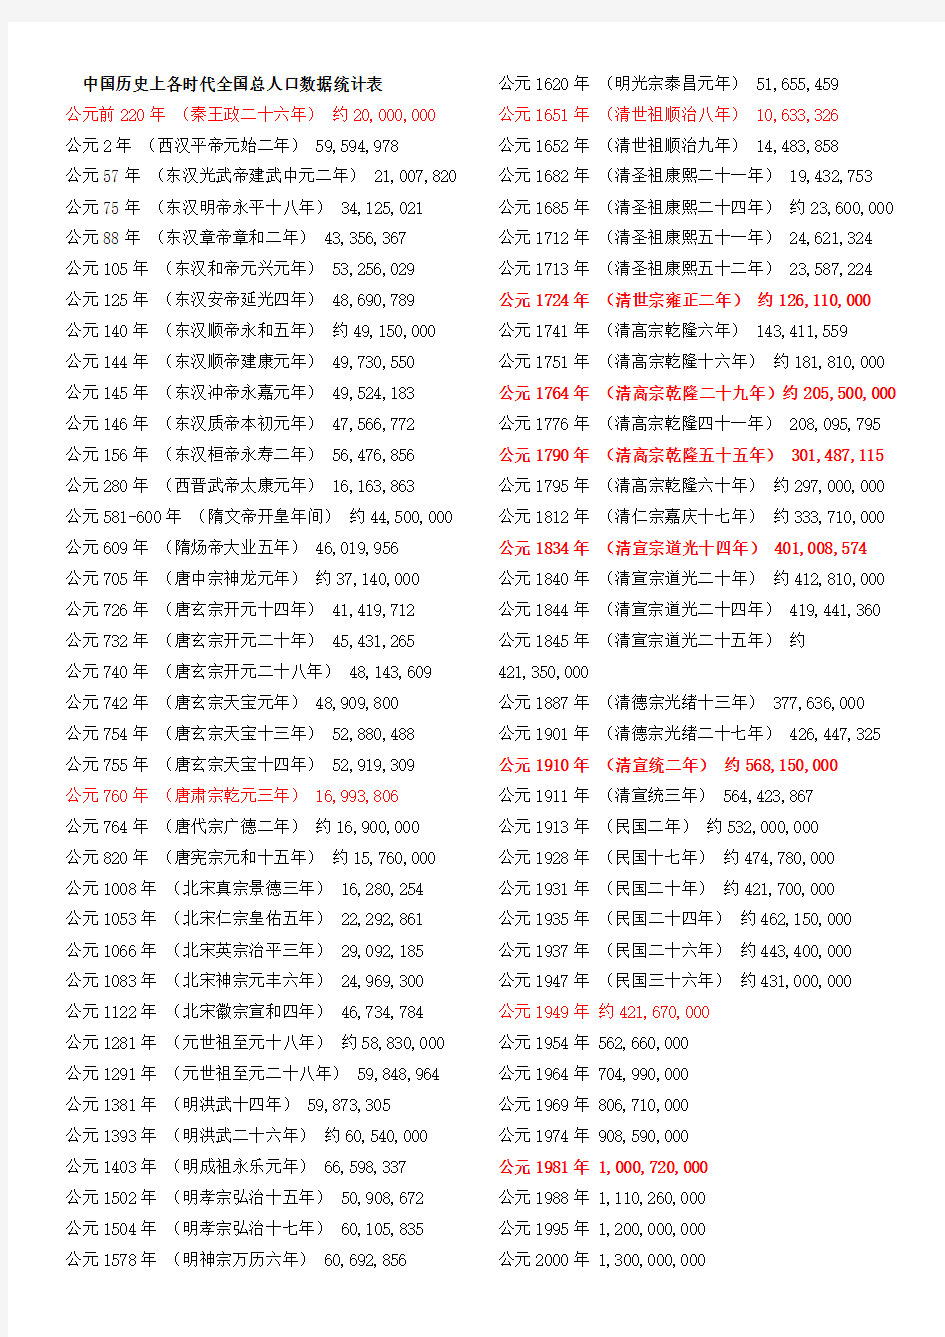 中国历史上各时代全国总人口数据统计表